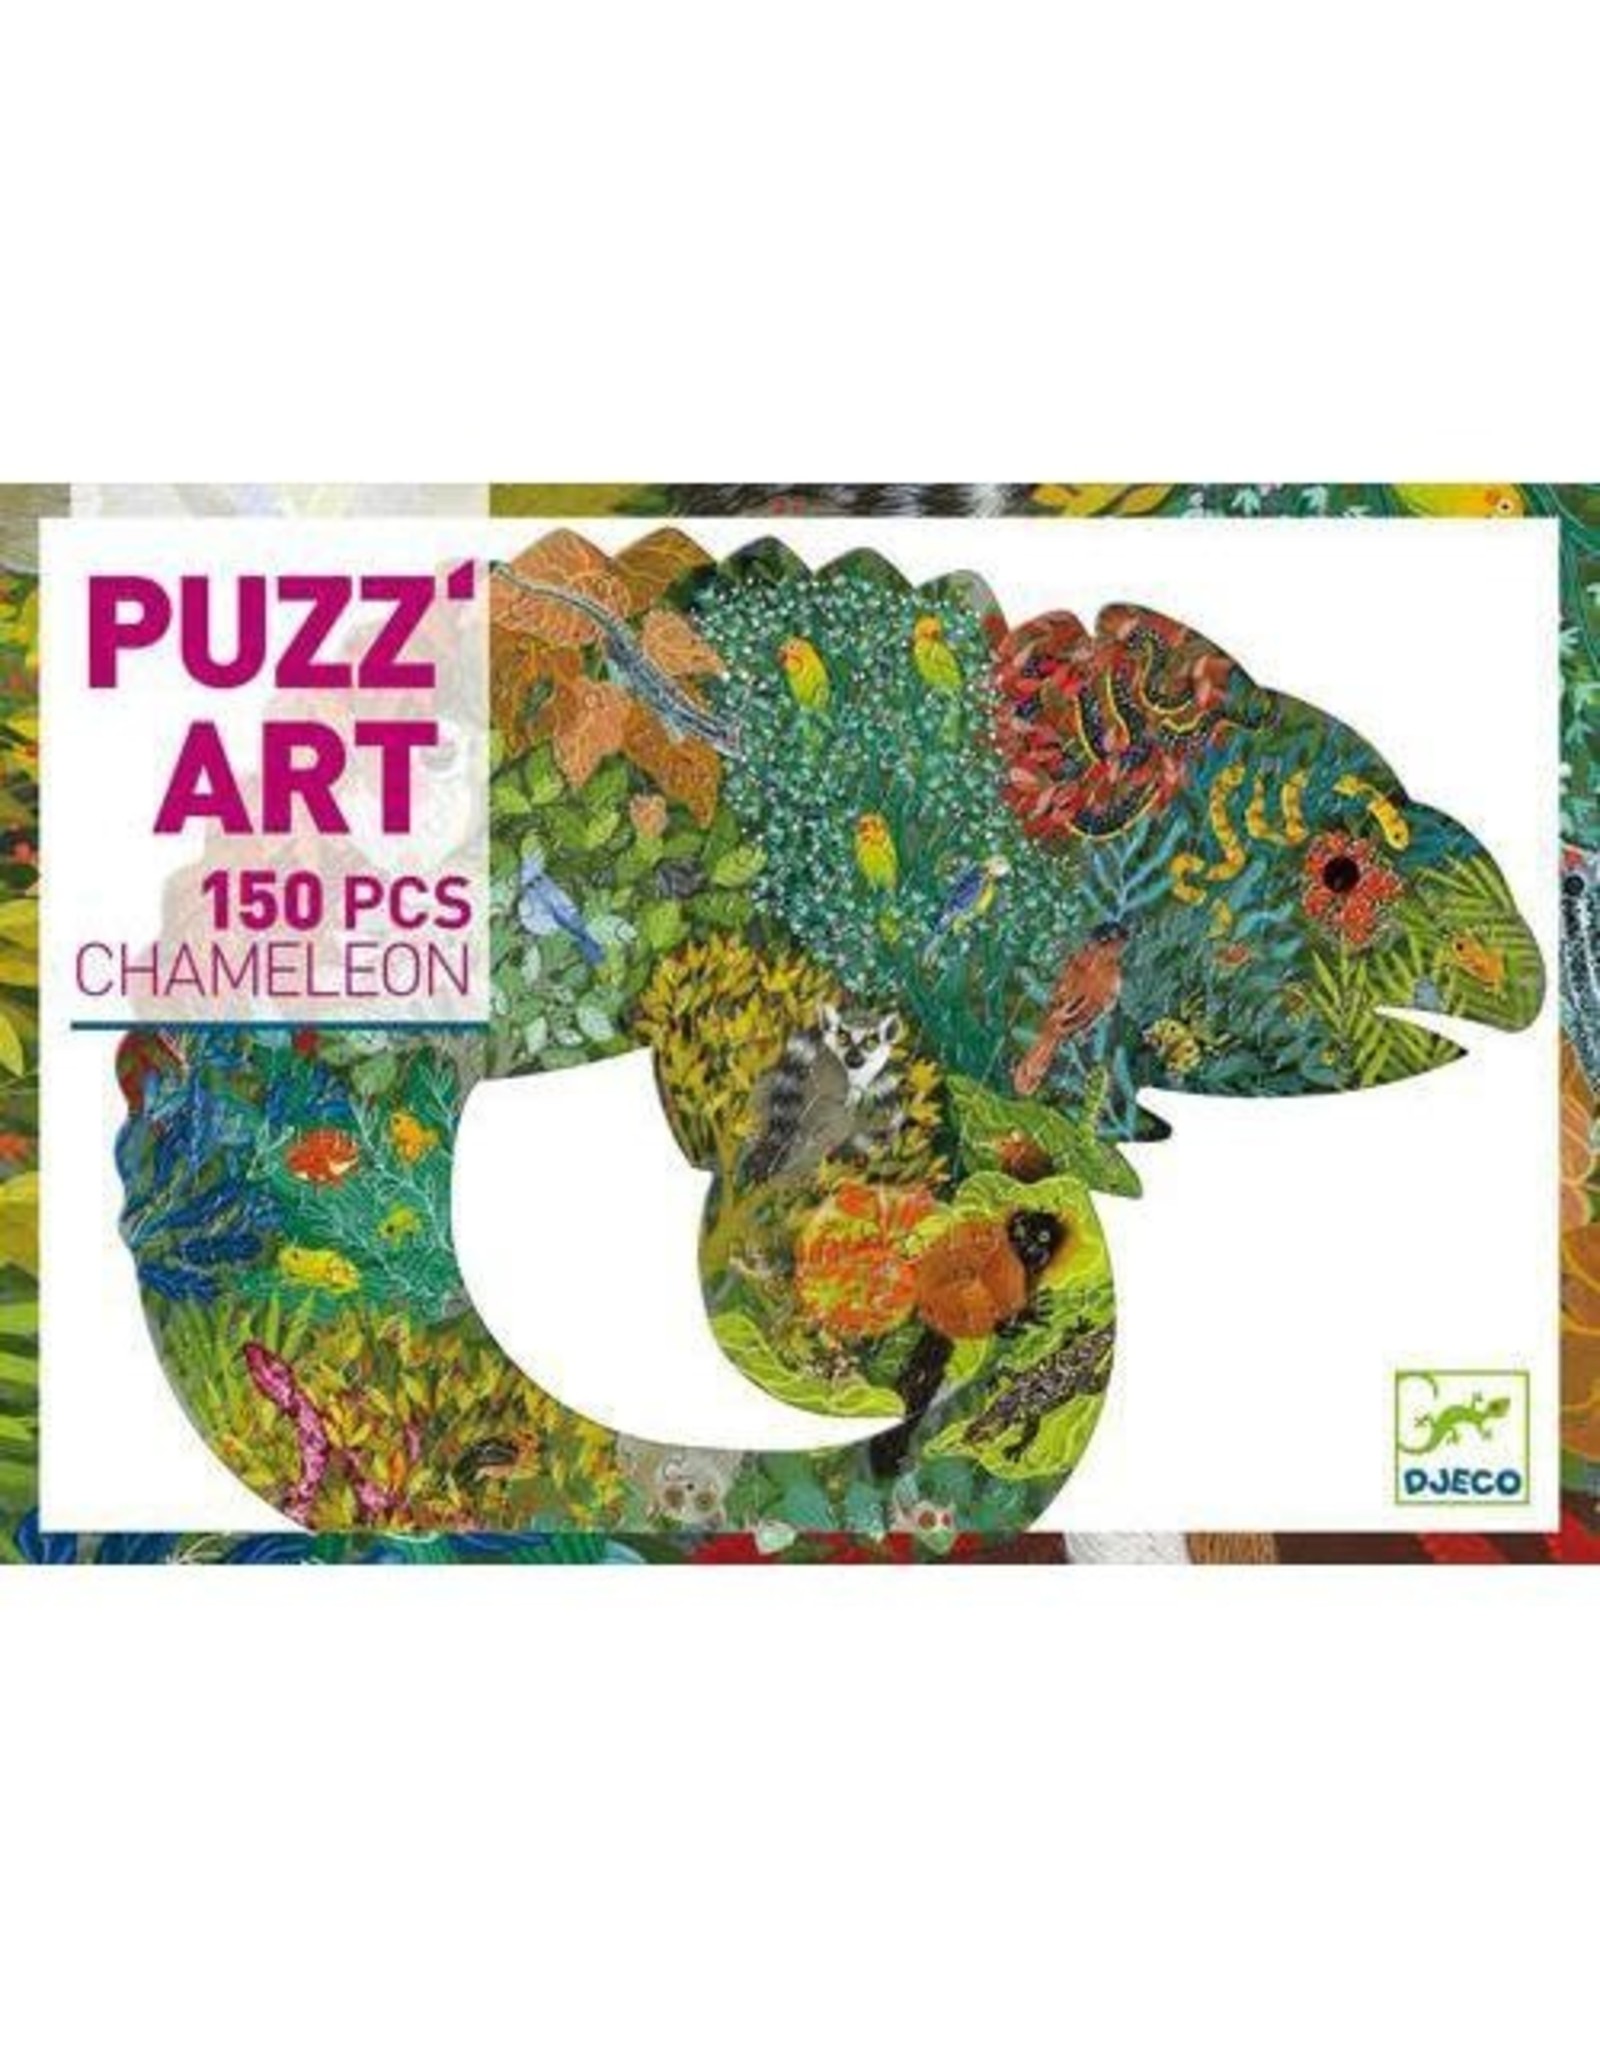 Djeco 150 pcs. Puzz'art, Chameleon